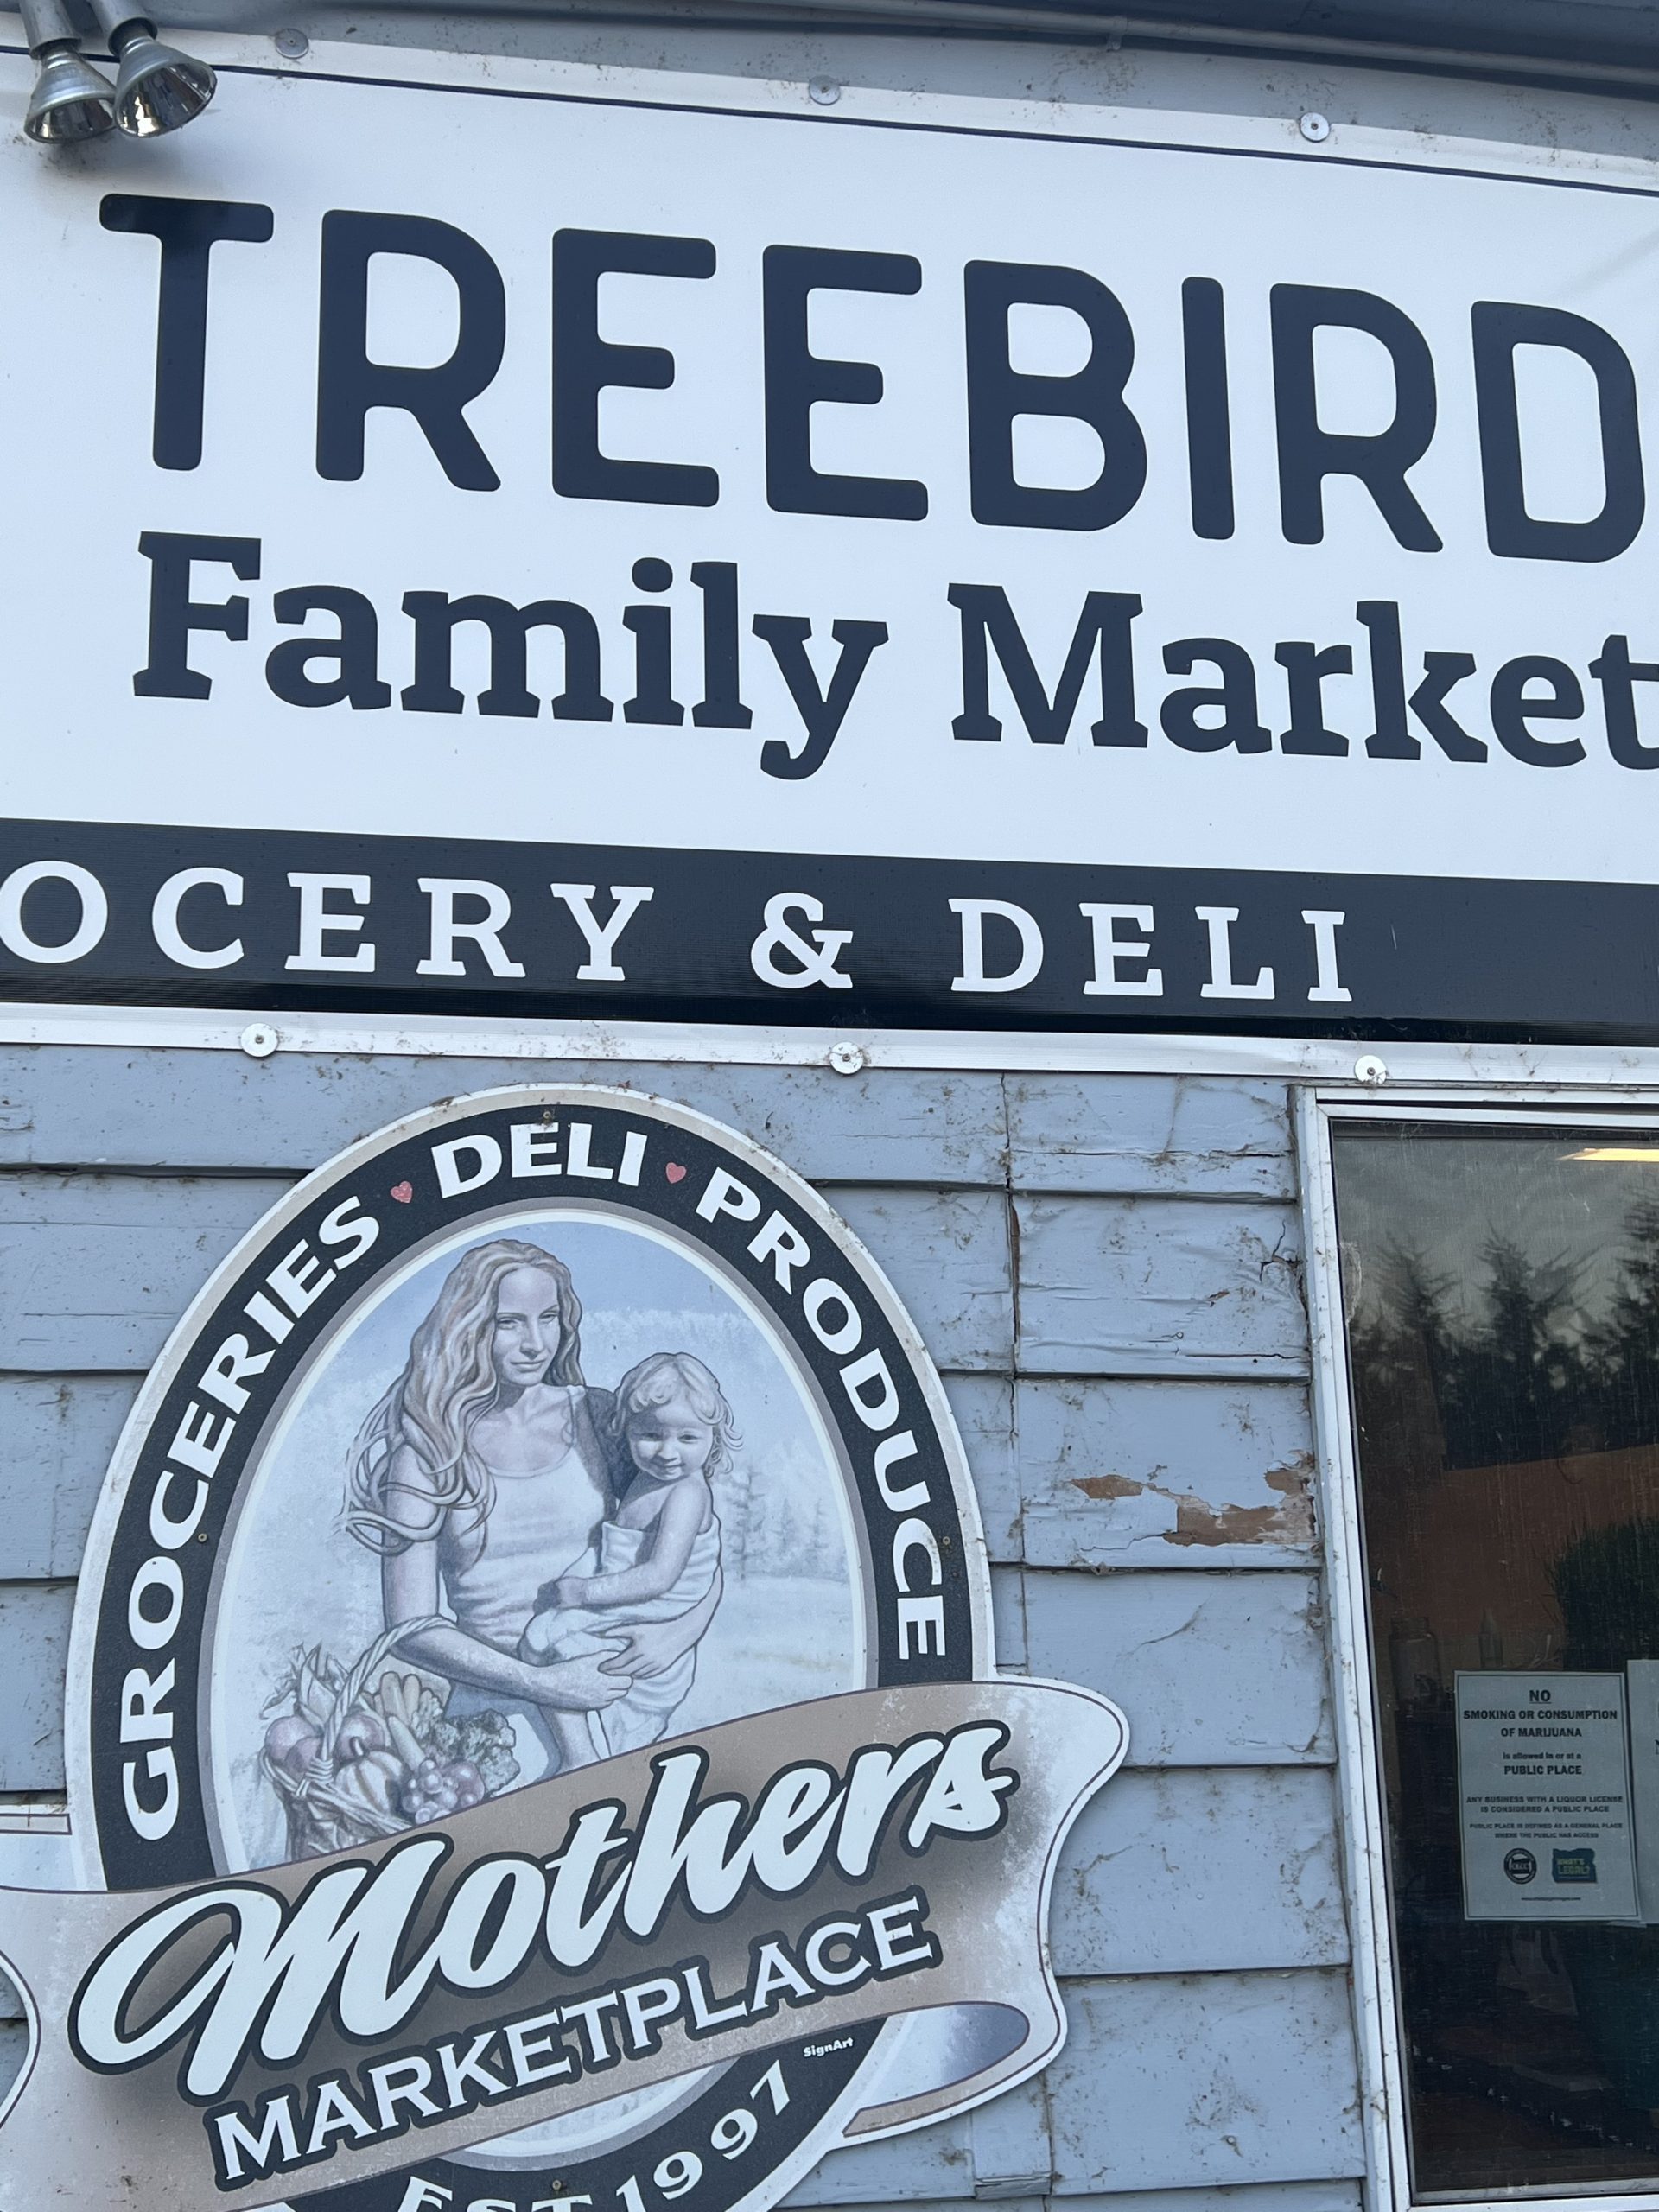 Treebird Family Market